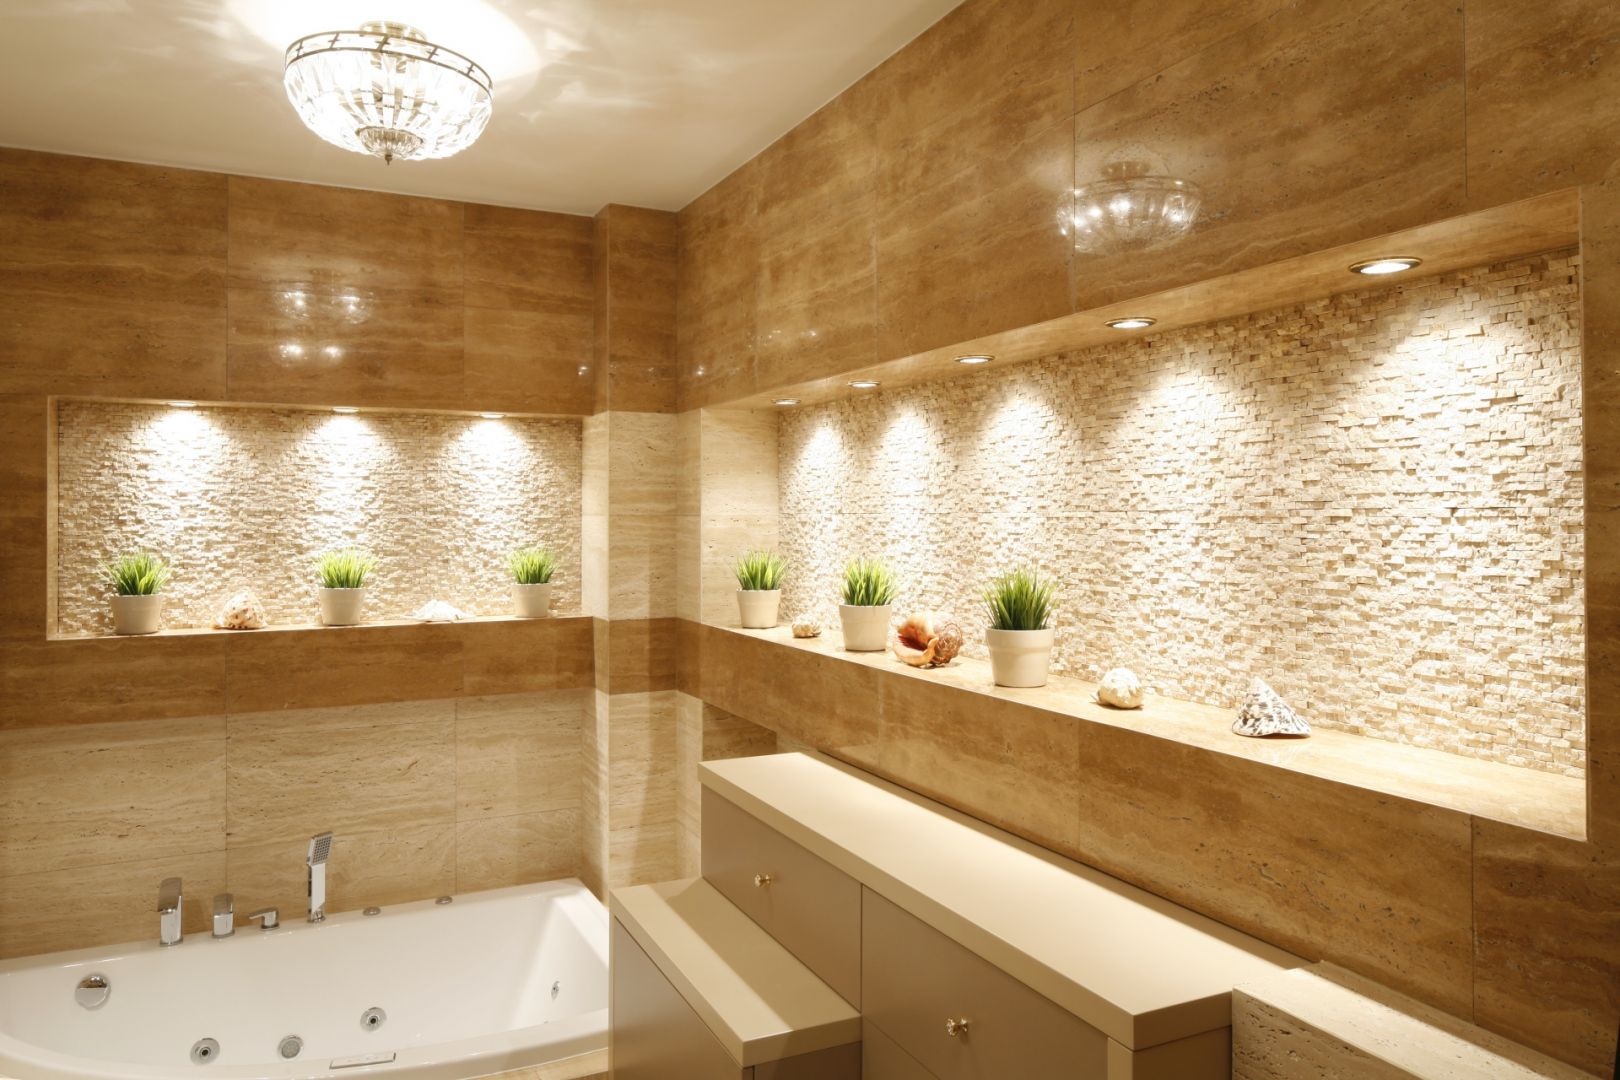 Ciekawie poprowadzone oświetlenie może optycznie wymodelować przestrzeń łazienki, ale doda jej także niepowtarzalnego charakteru. Projekt Jolanta Kwilman. Fot. Bartosz Jarosz